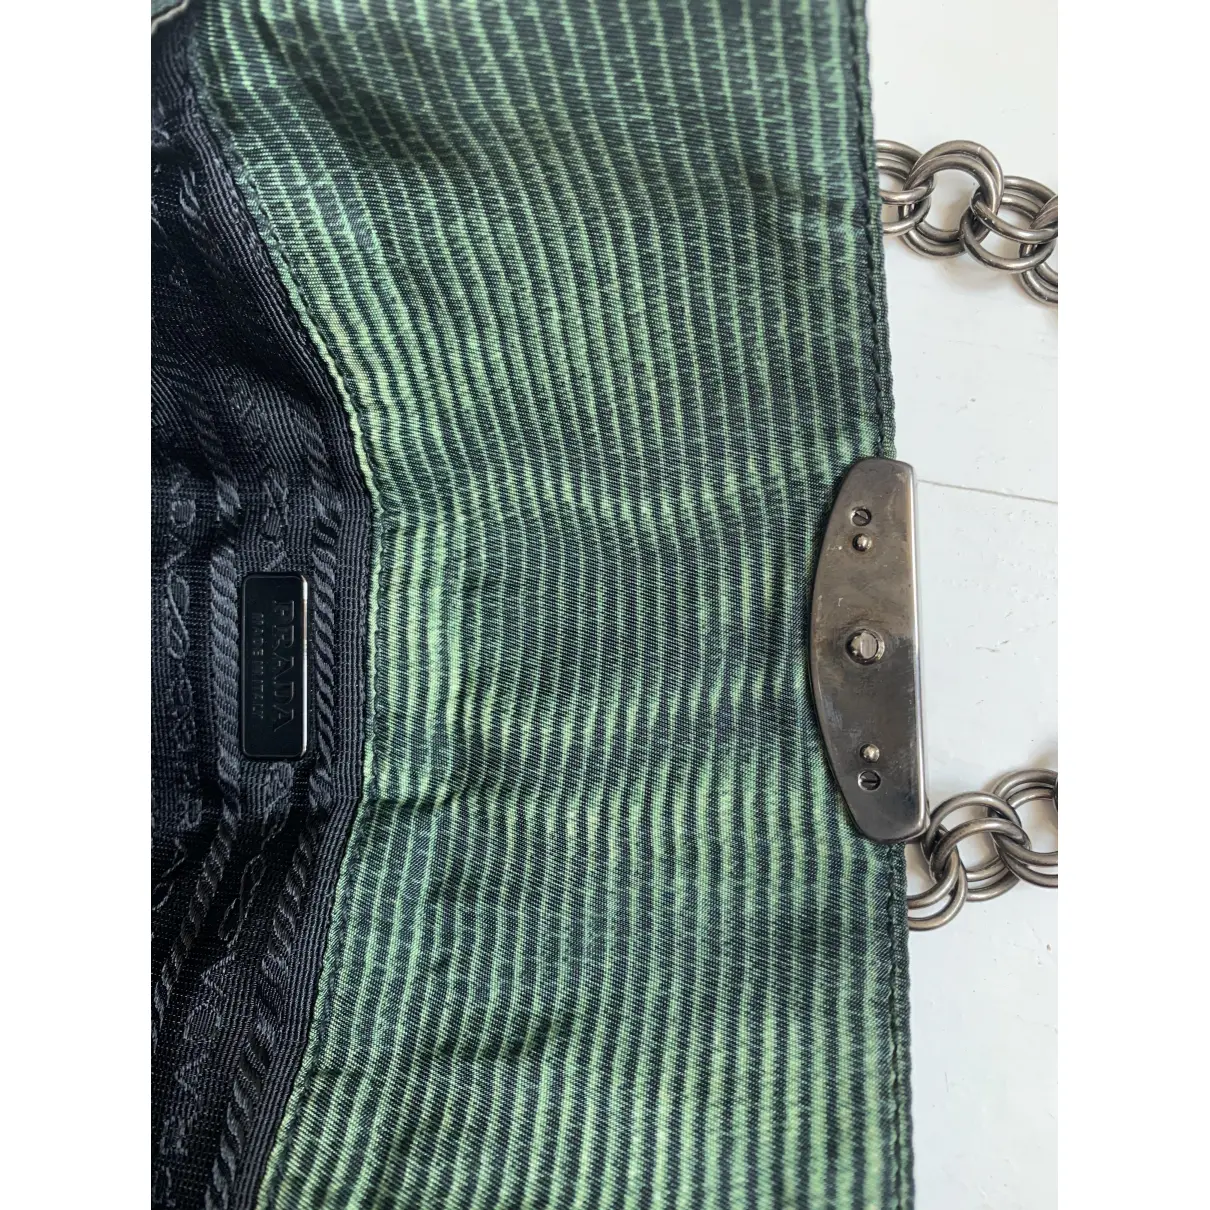 Sound silk handbag Prada